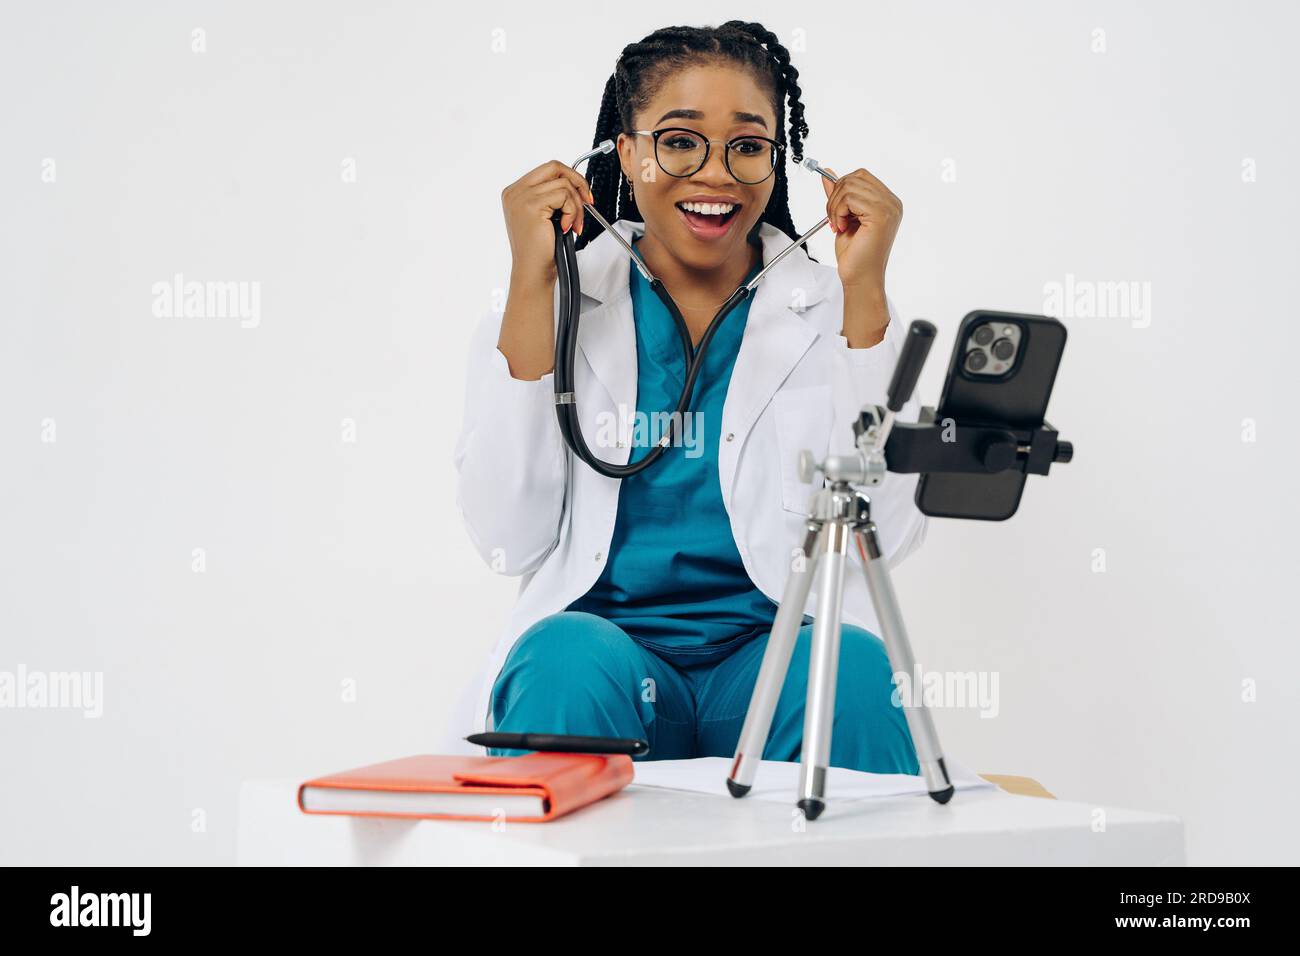 Femme médecin afro-américaine heureuse porte un manteau médical tenant et utilisant un téléphone portable sur fond blanc Banque D'Images